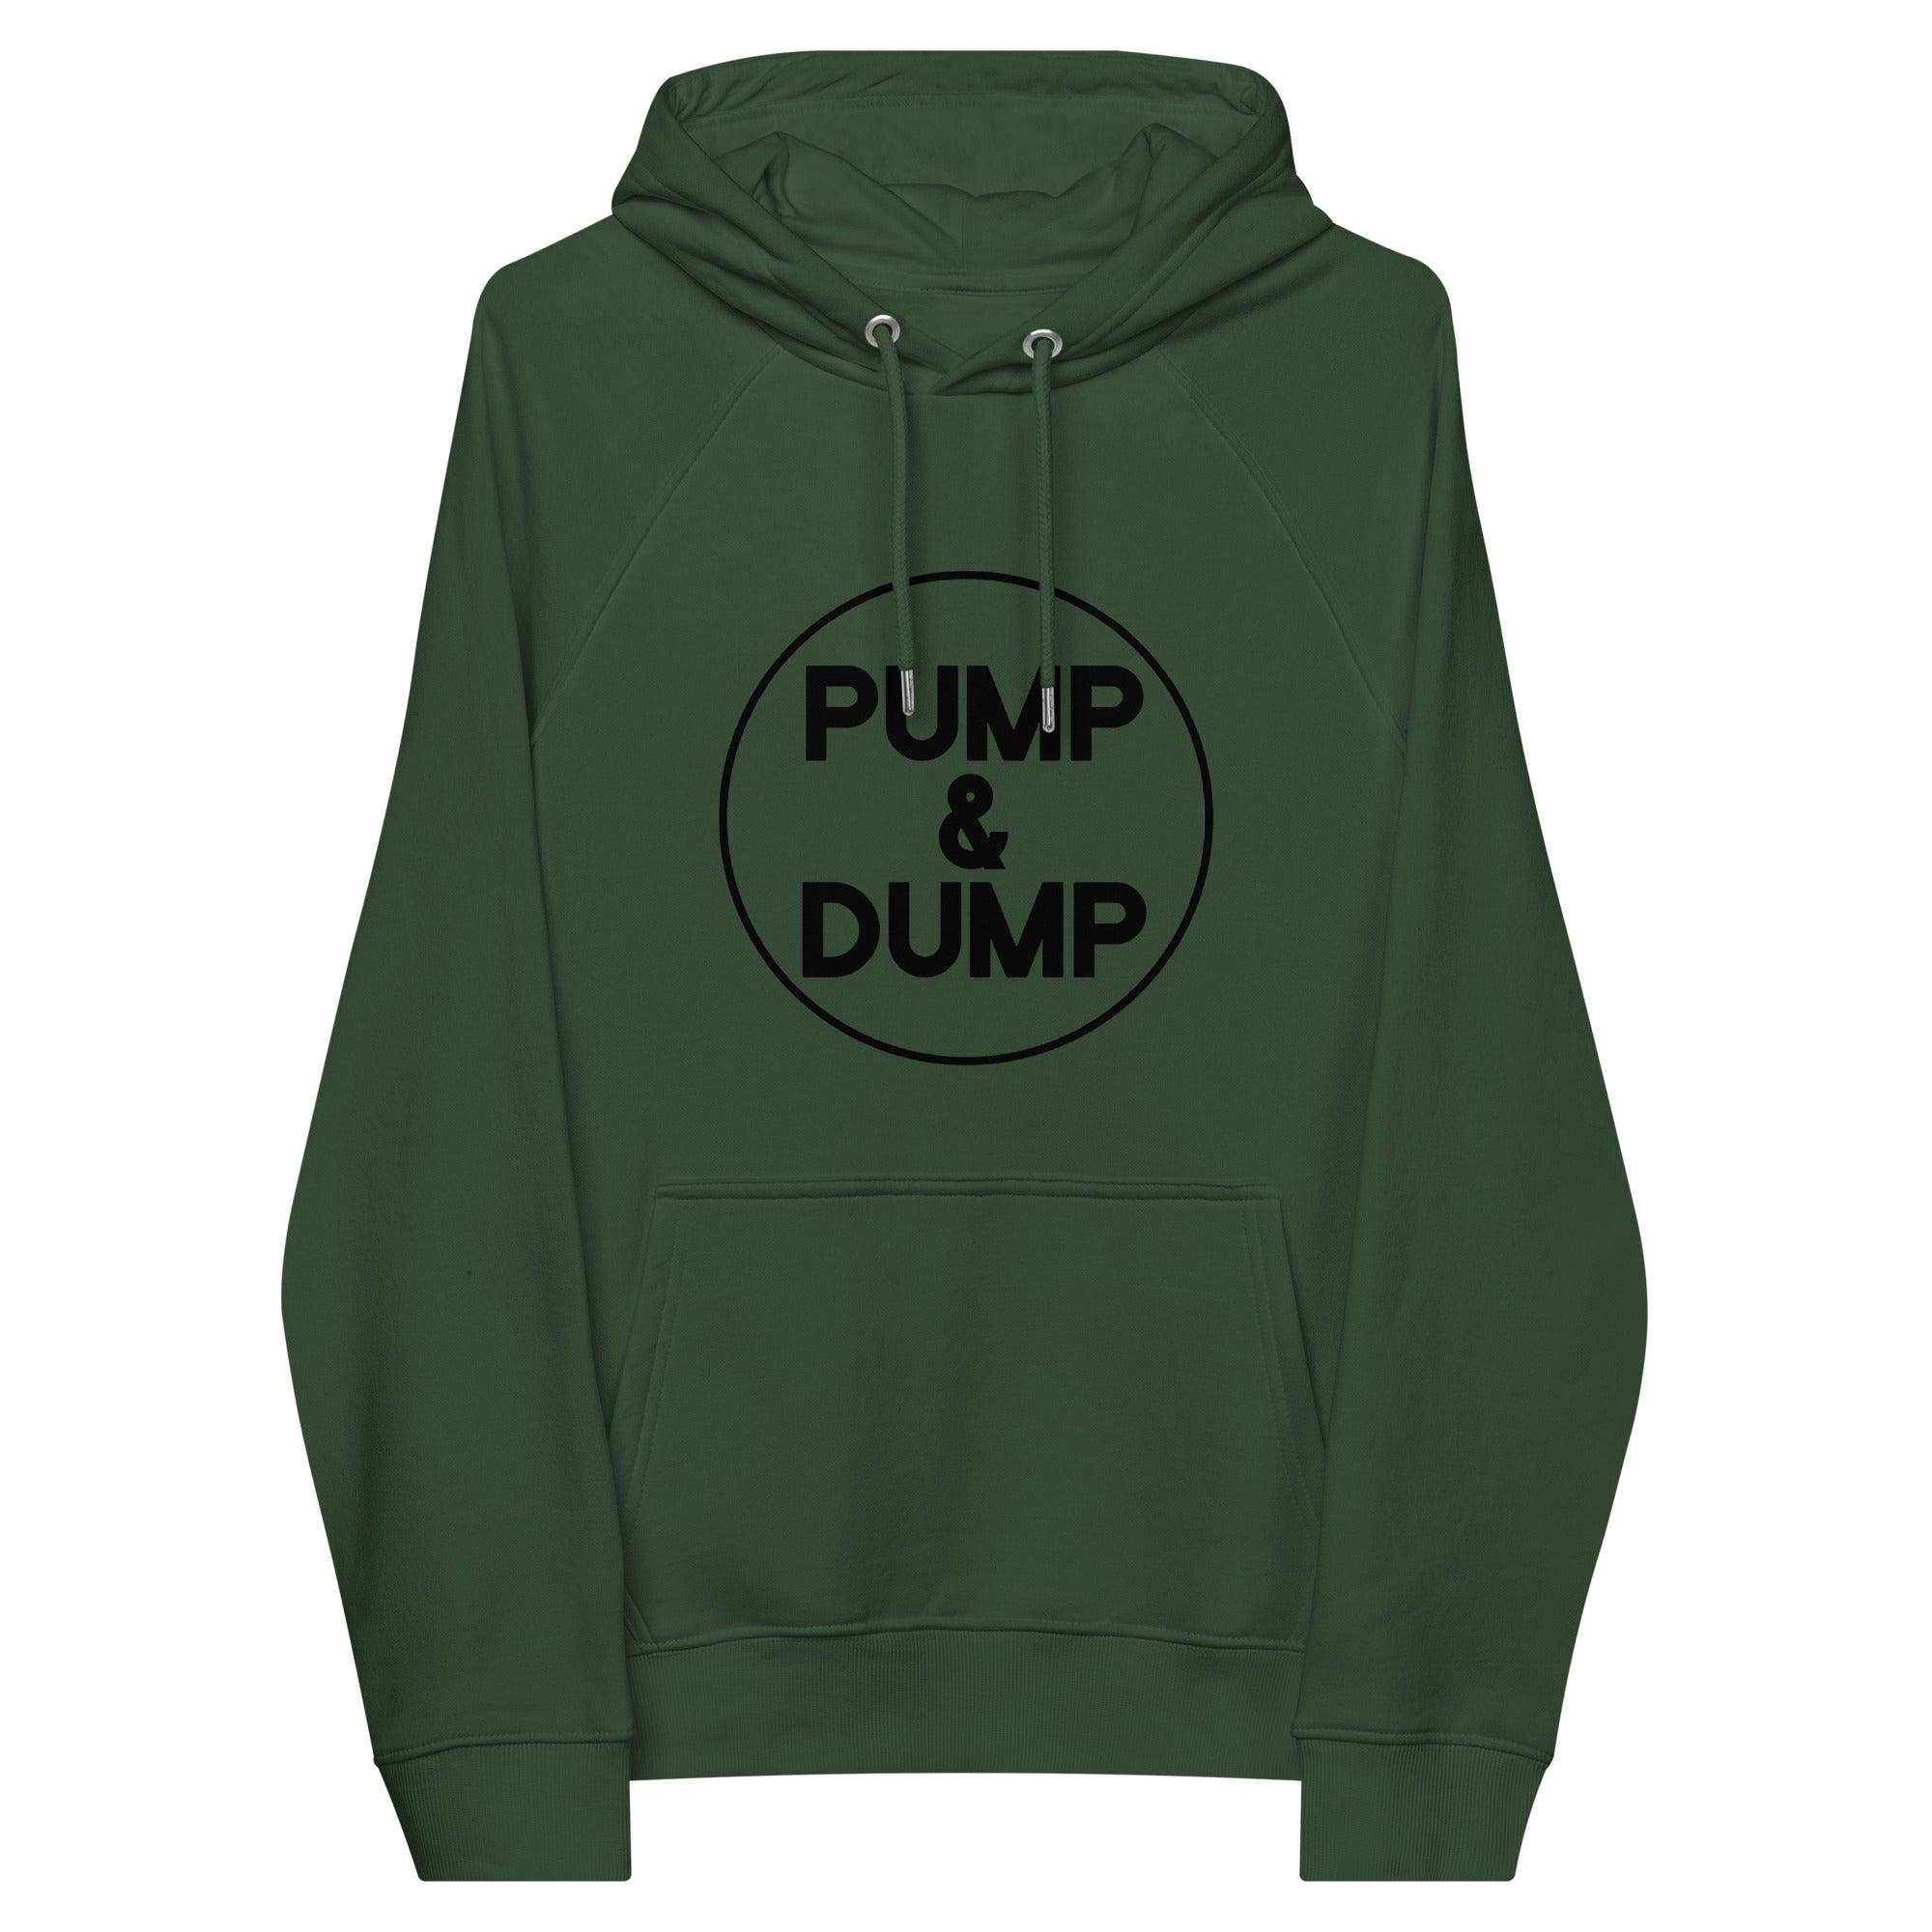 Pump & Dump Pullover Hoodie - InvestmenTees